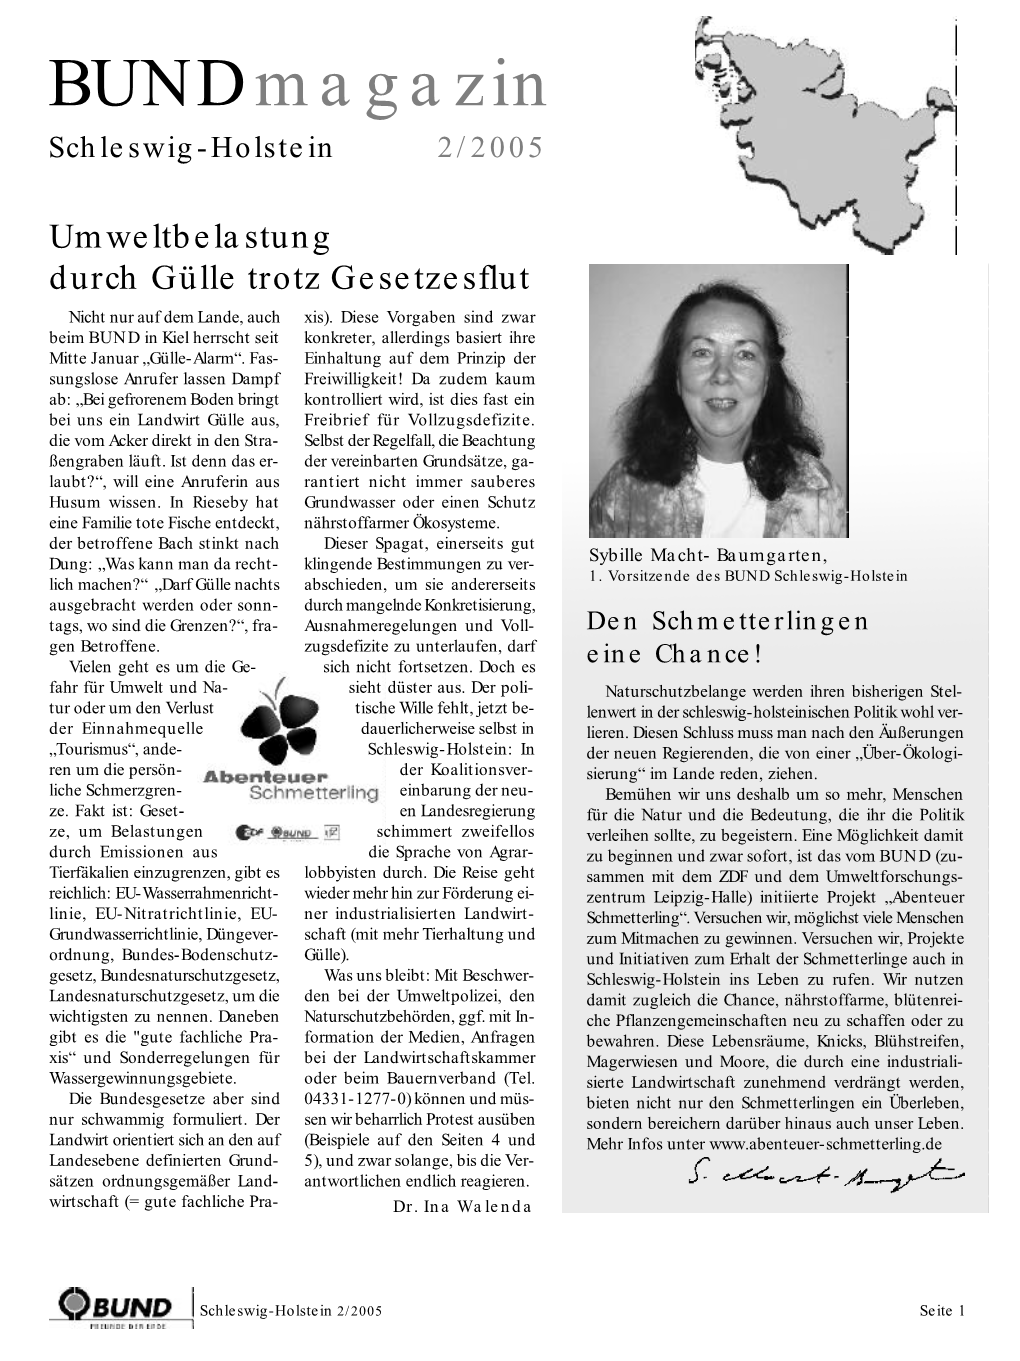 Bundmagazin Schleswig-Holstein 2/2005